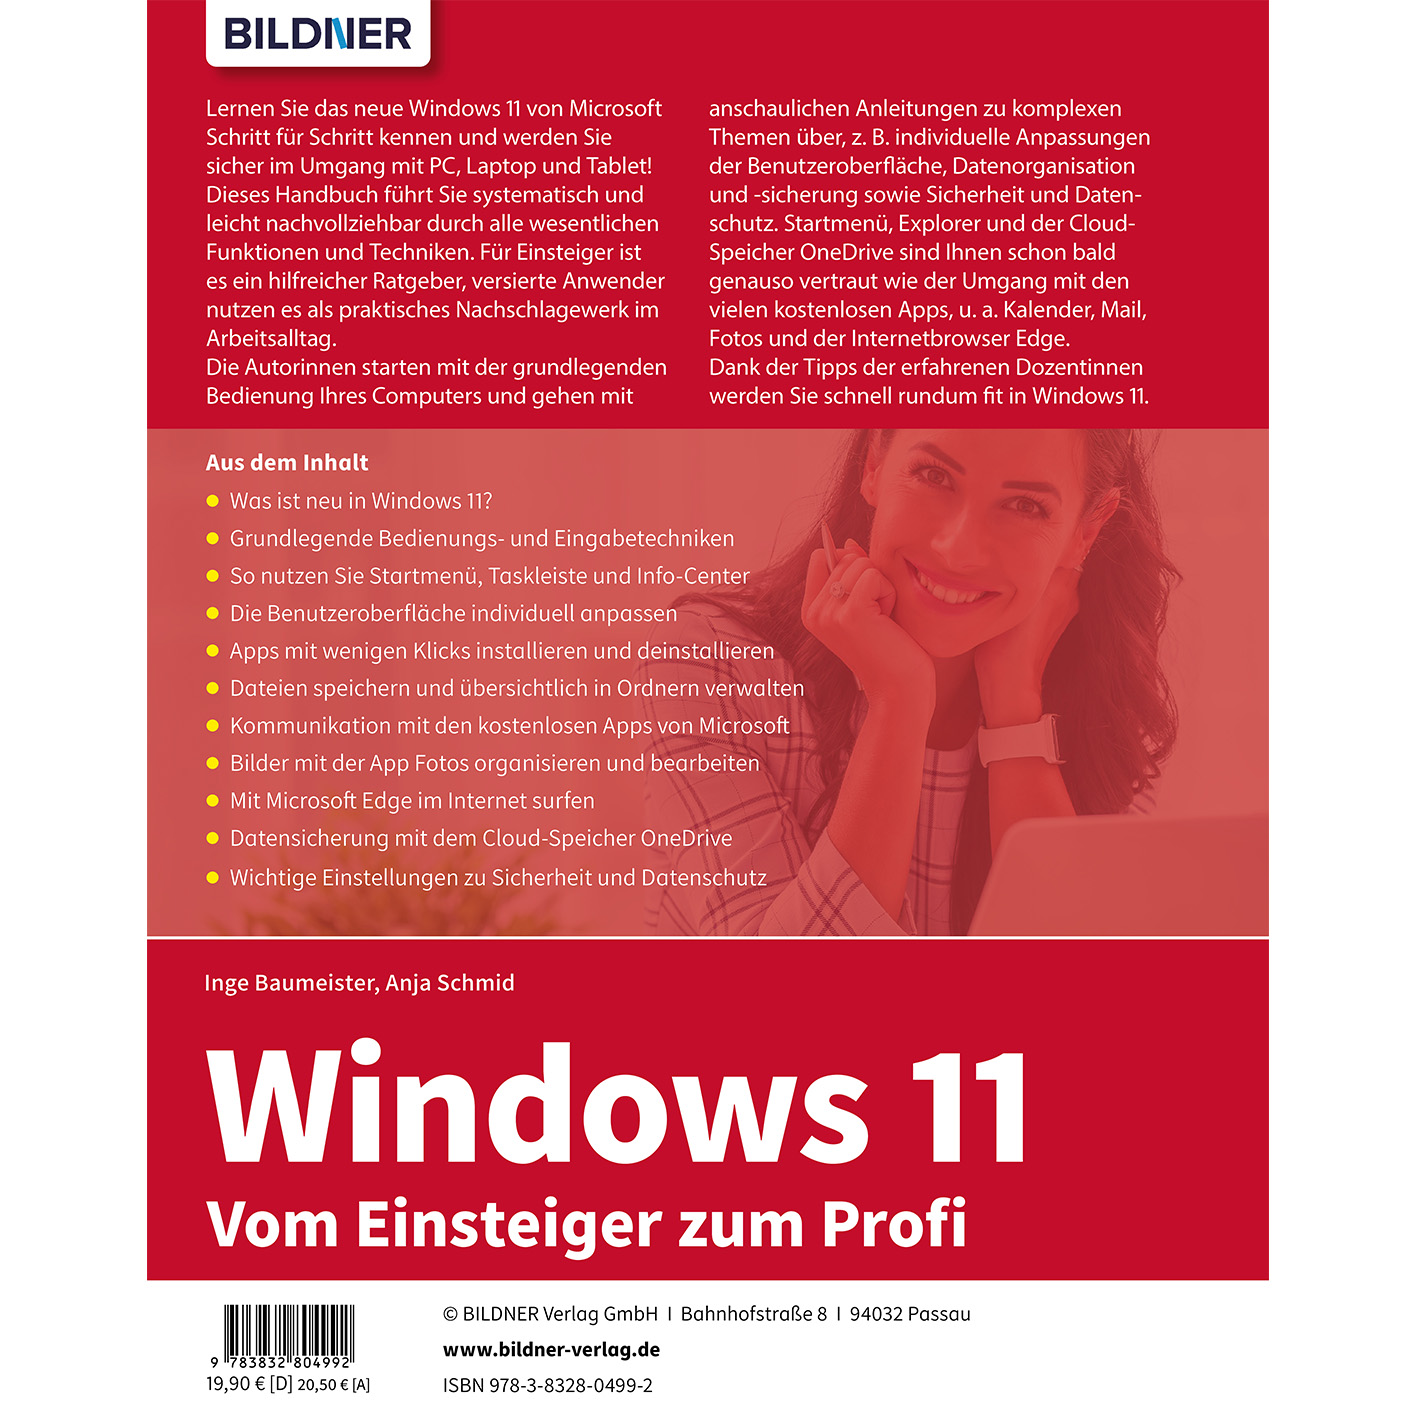 - Einsteiger zum Windows Vom Profi 11